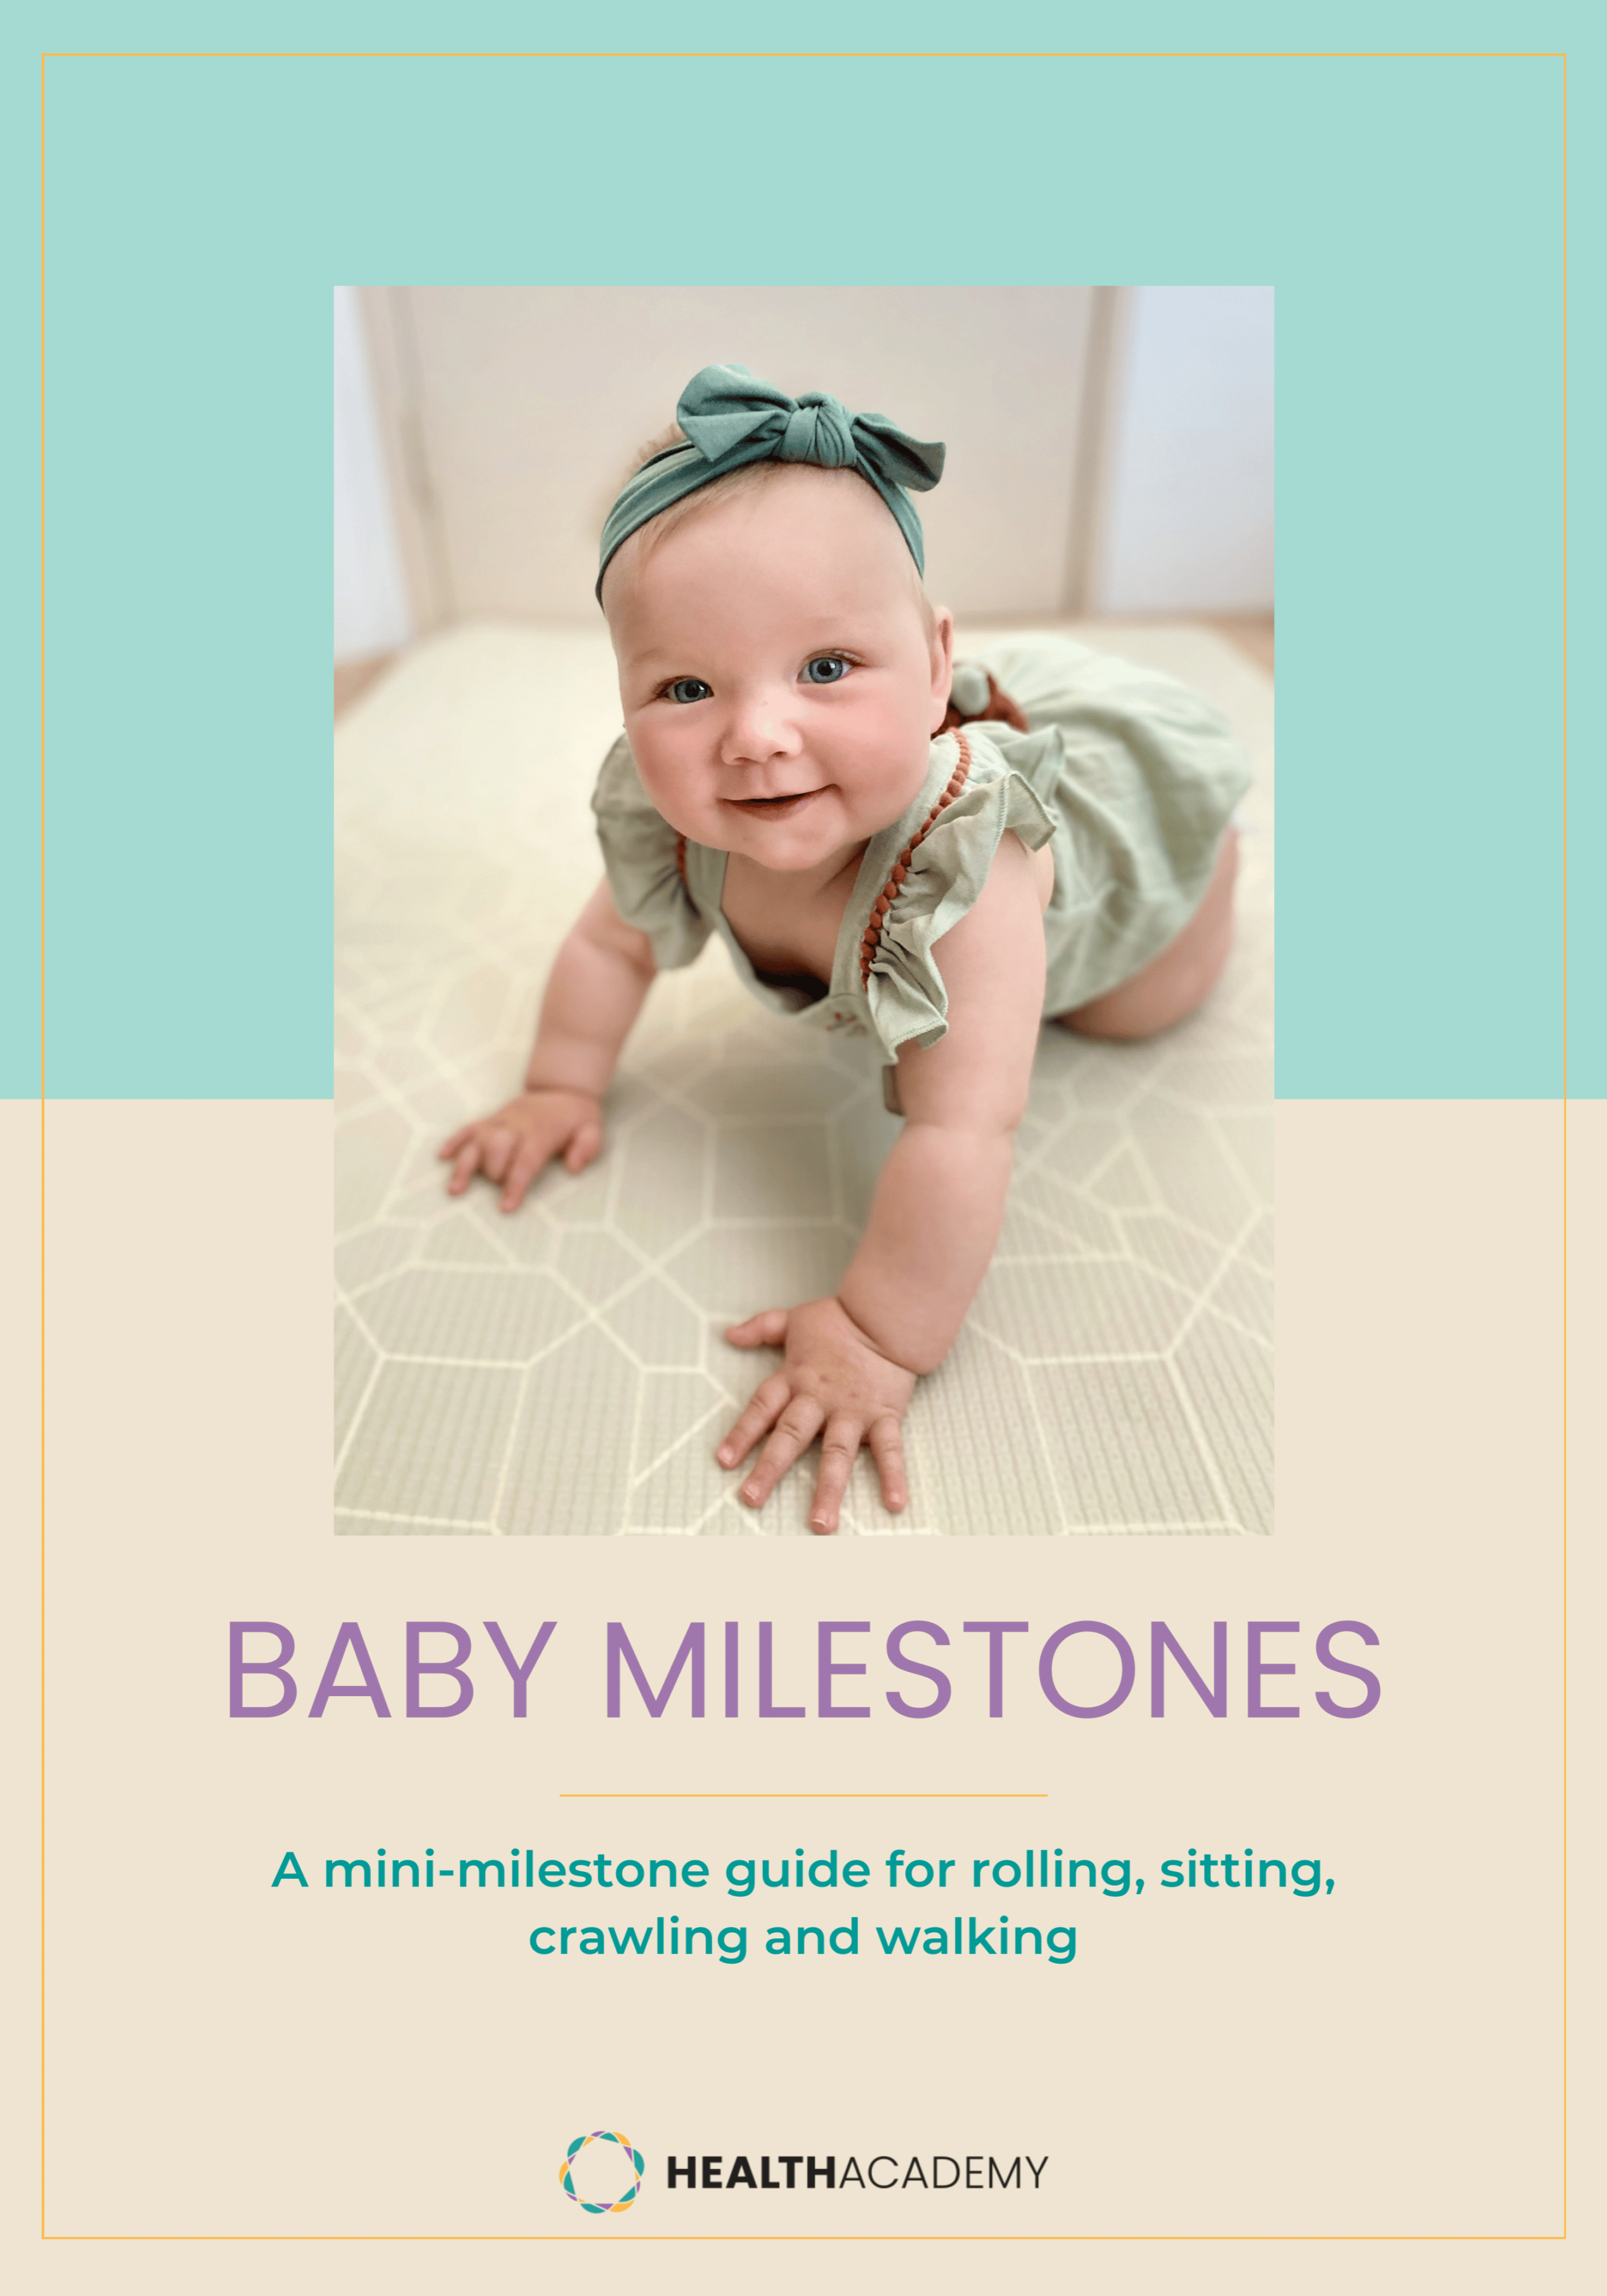 Baby milestones